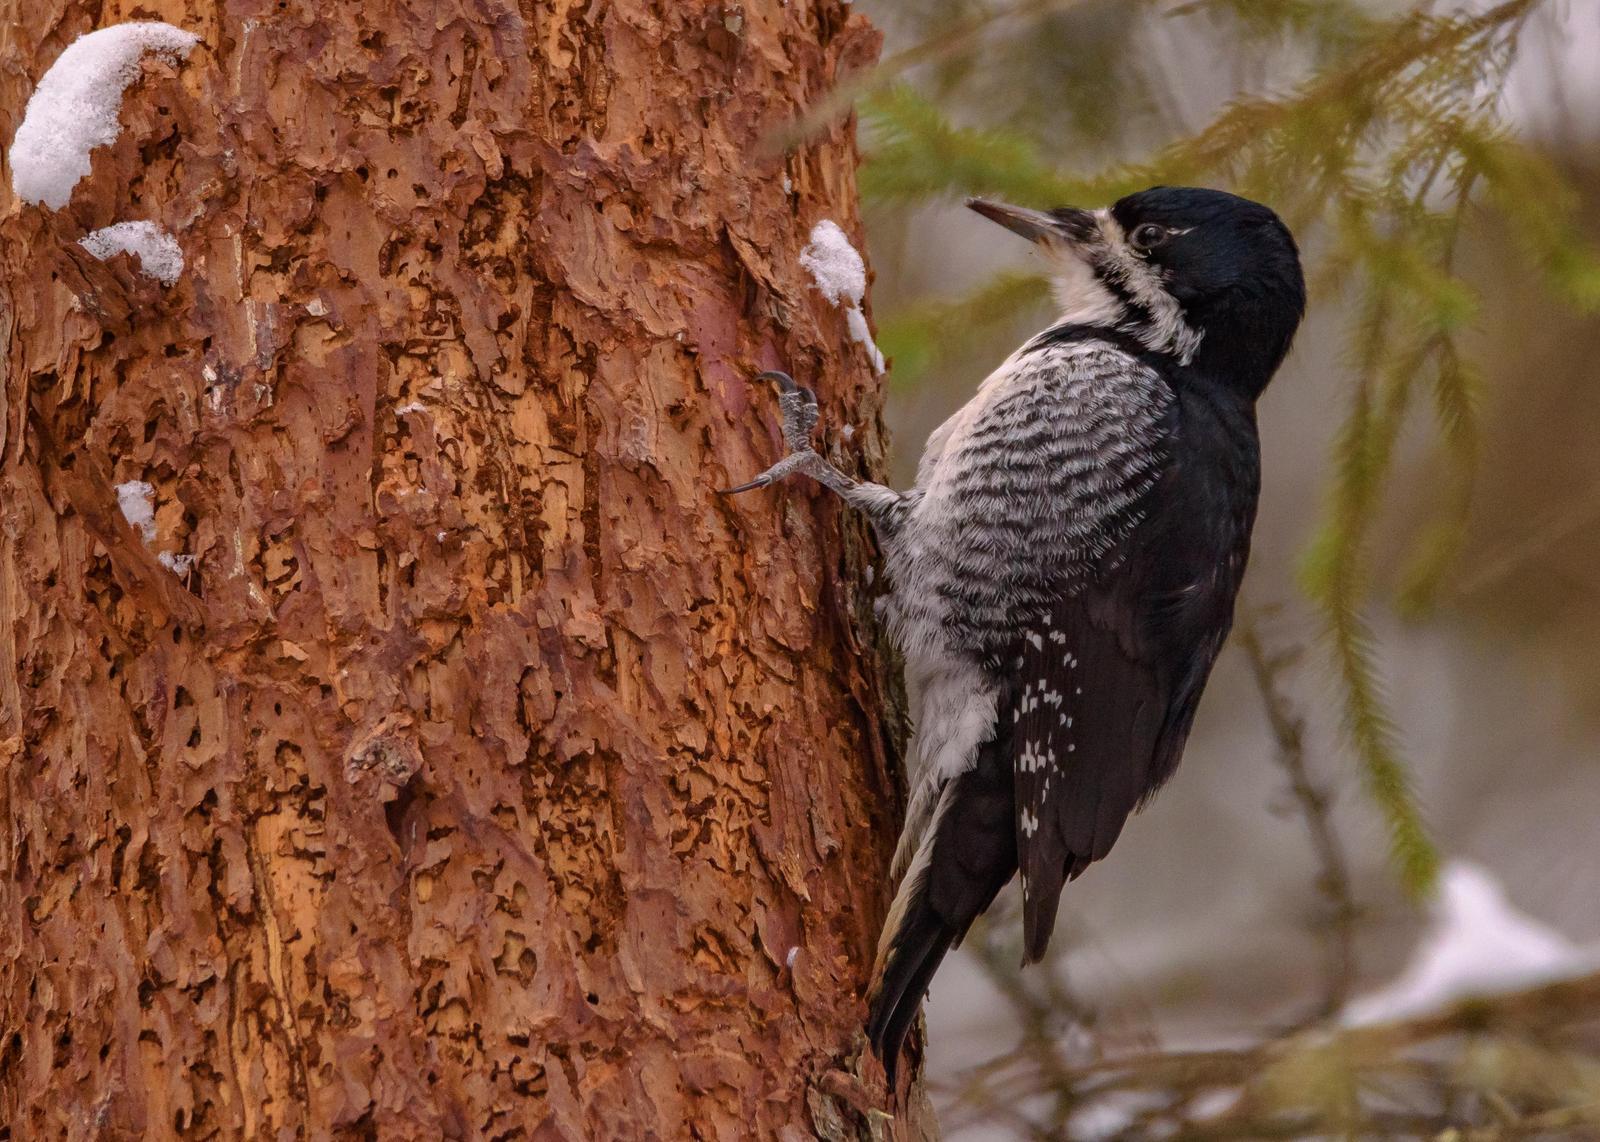 Black-backed Woodpecker Photo by Keshava Mysore